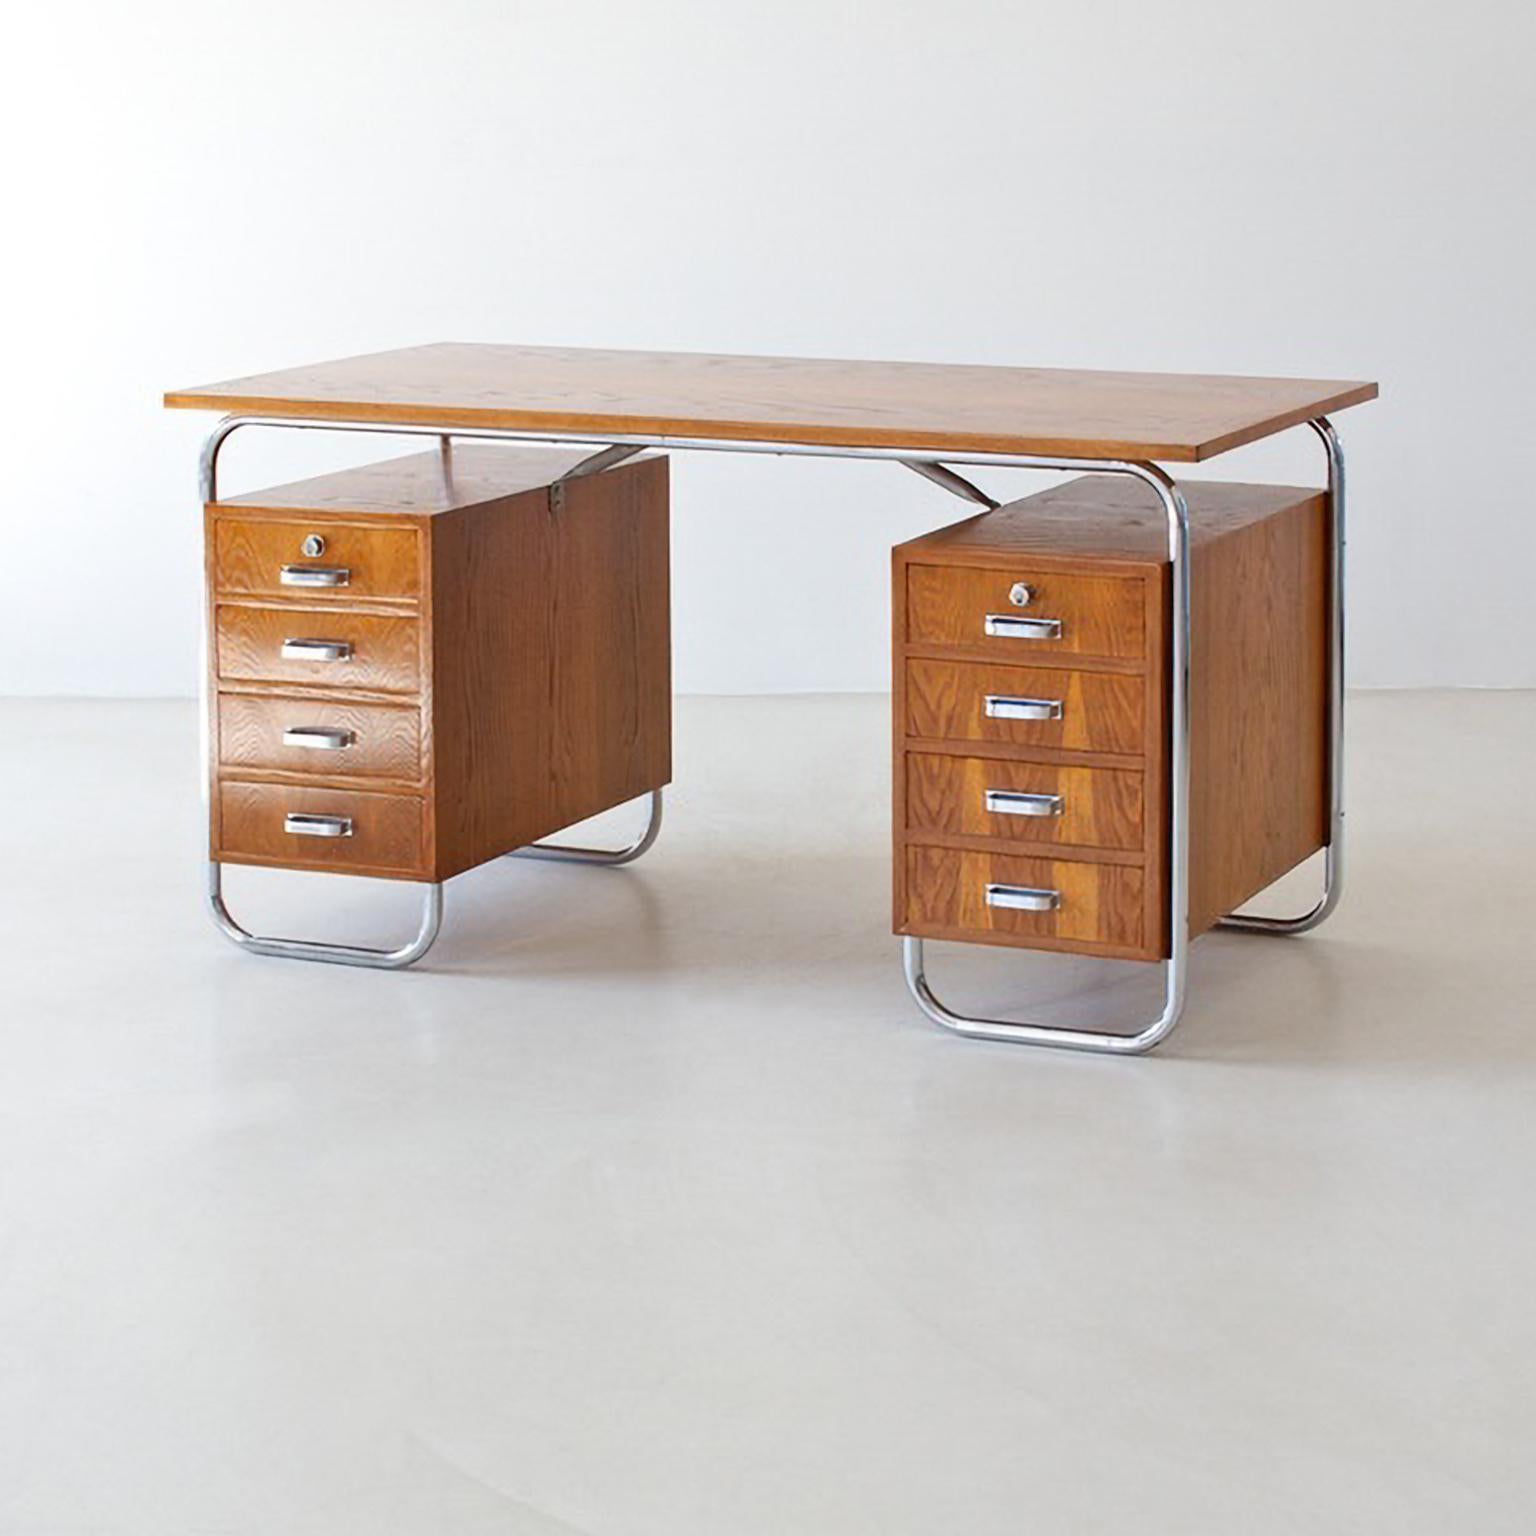 Modernistischer Schreibtisch aus Stahlrohr mit 2 Schubladen, verchromtes Metall, Eichenholzfurnier (Furnier) im Angebot